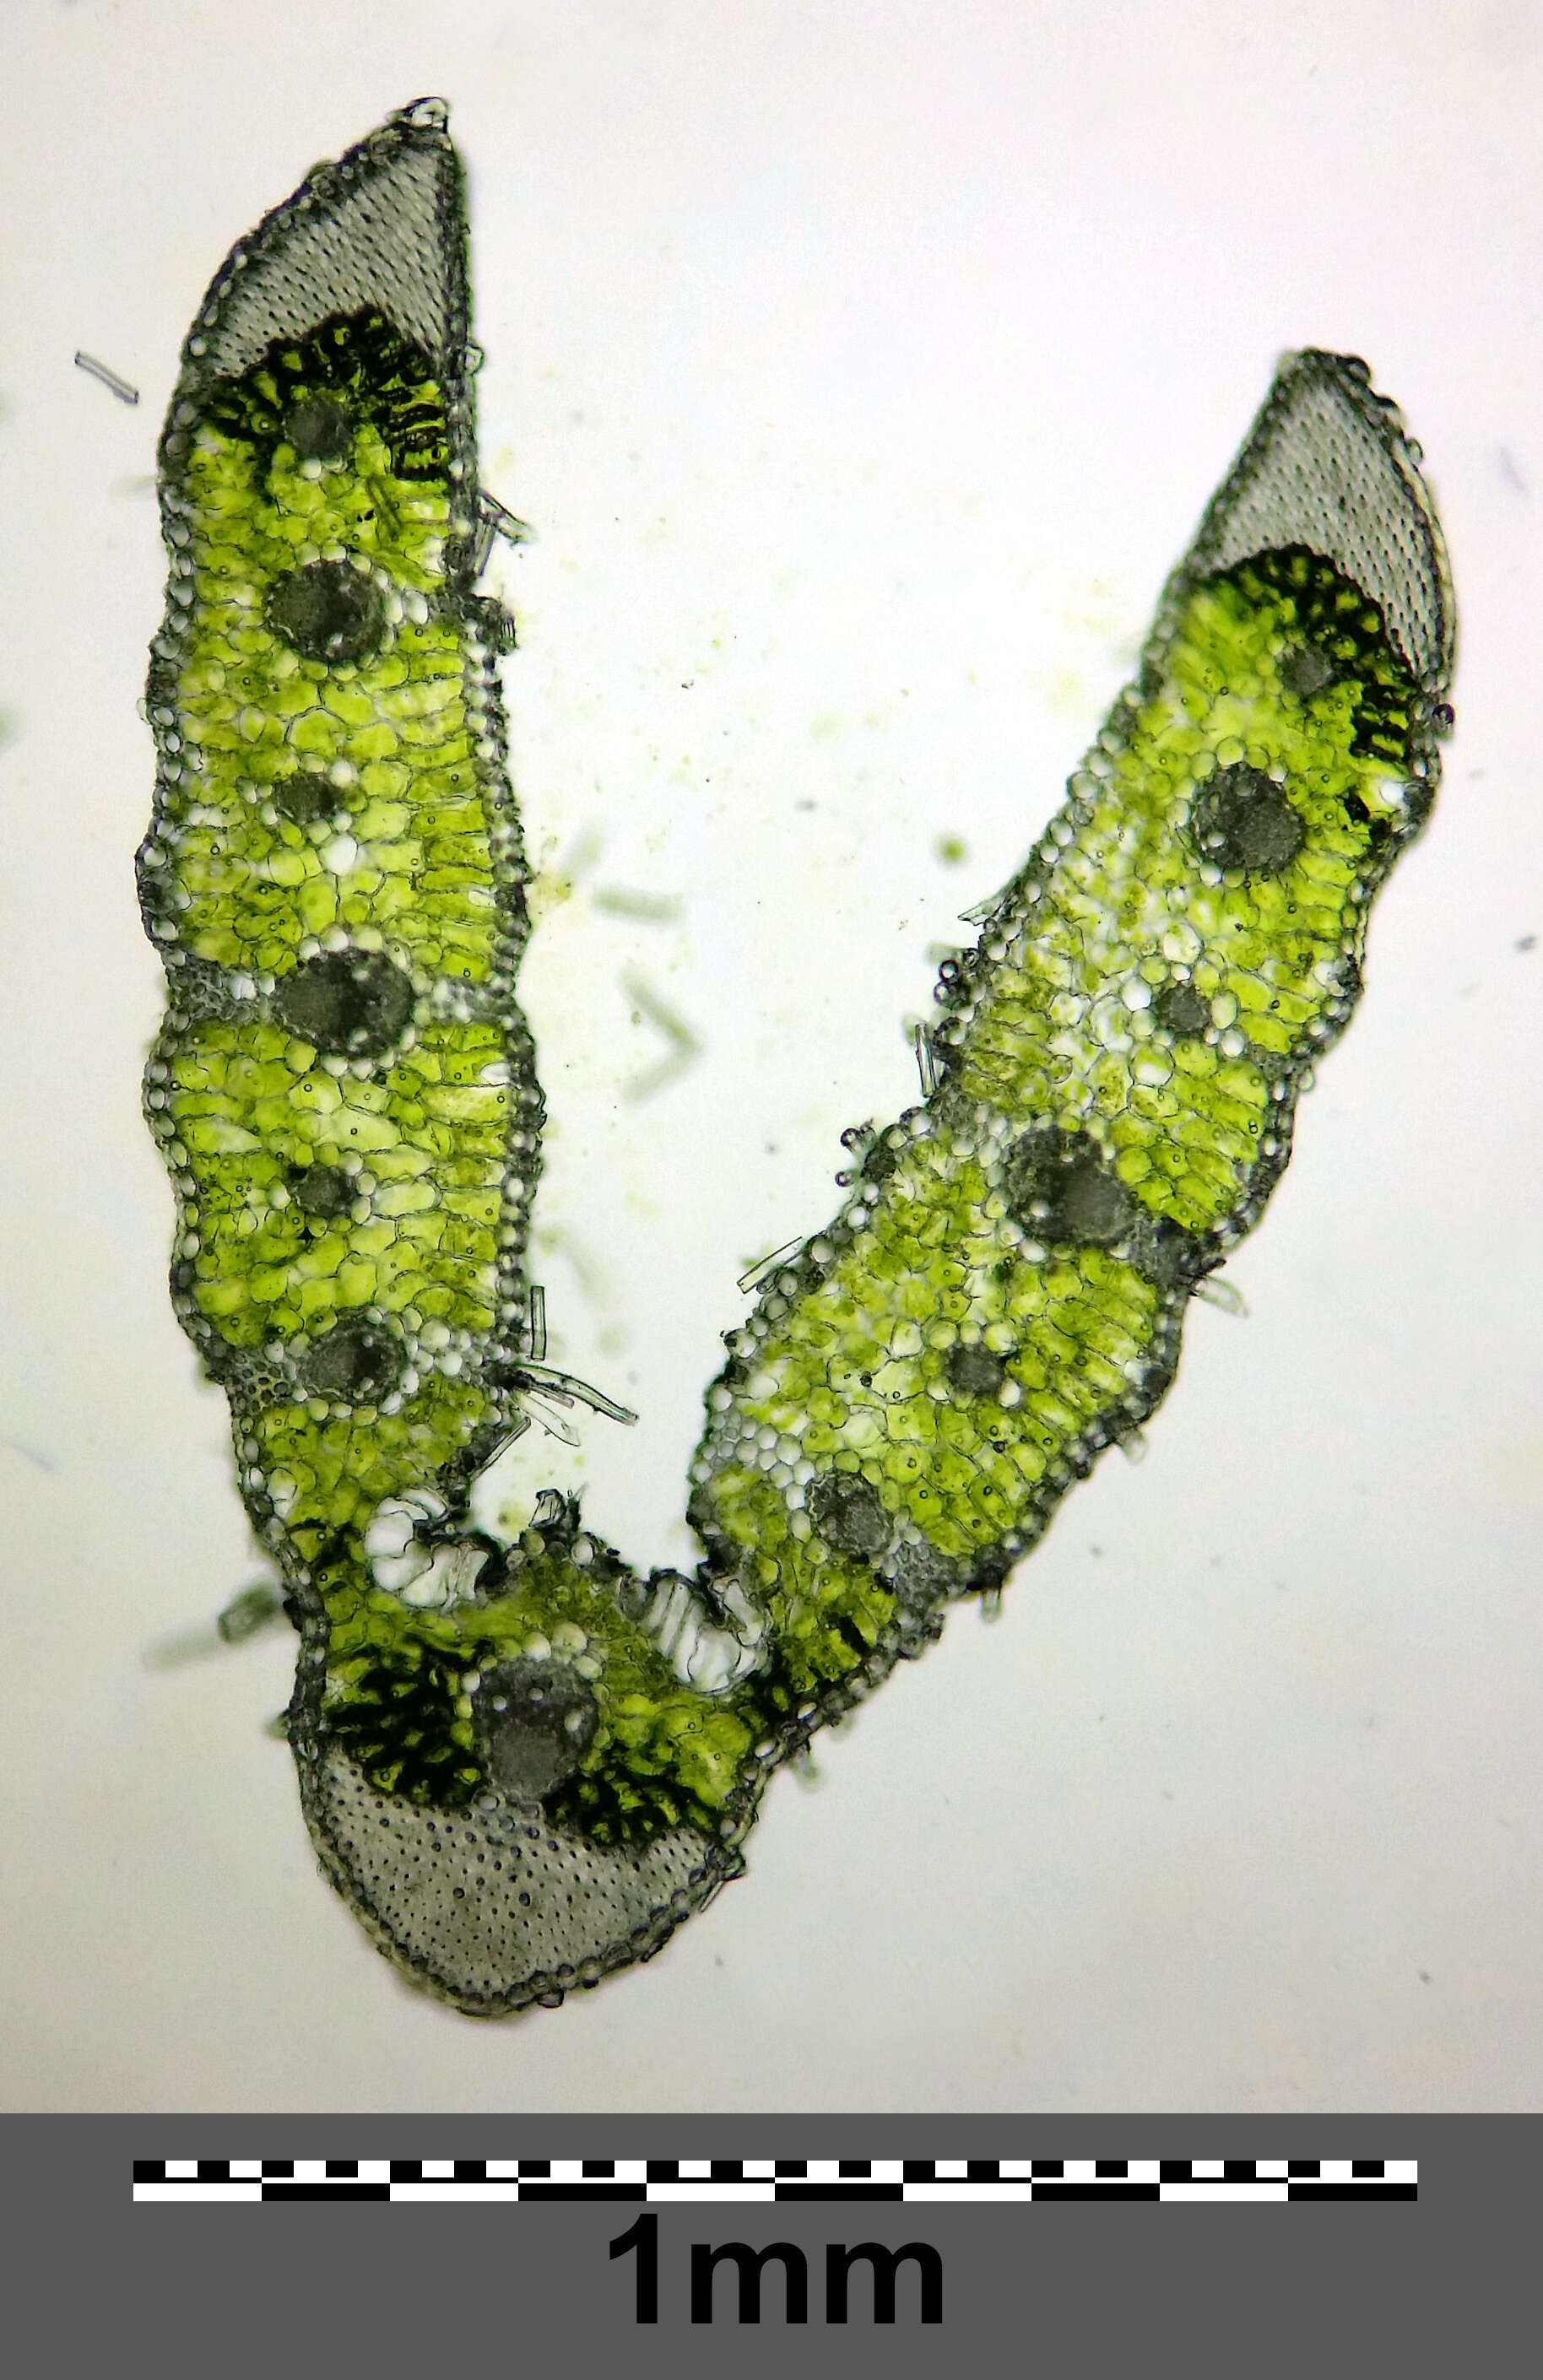 Image of Helictochloa pratensis (L.) Romero Zarco